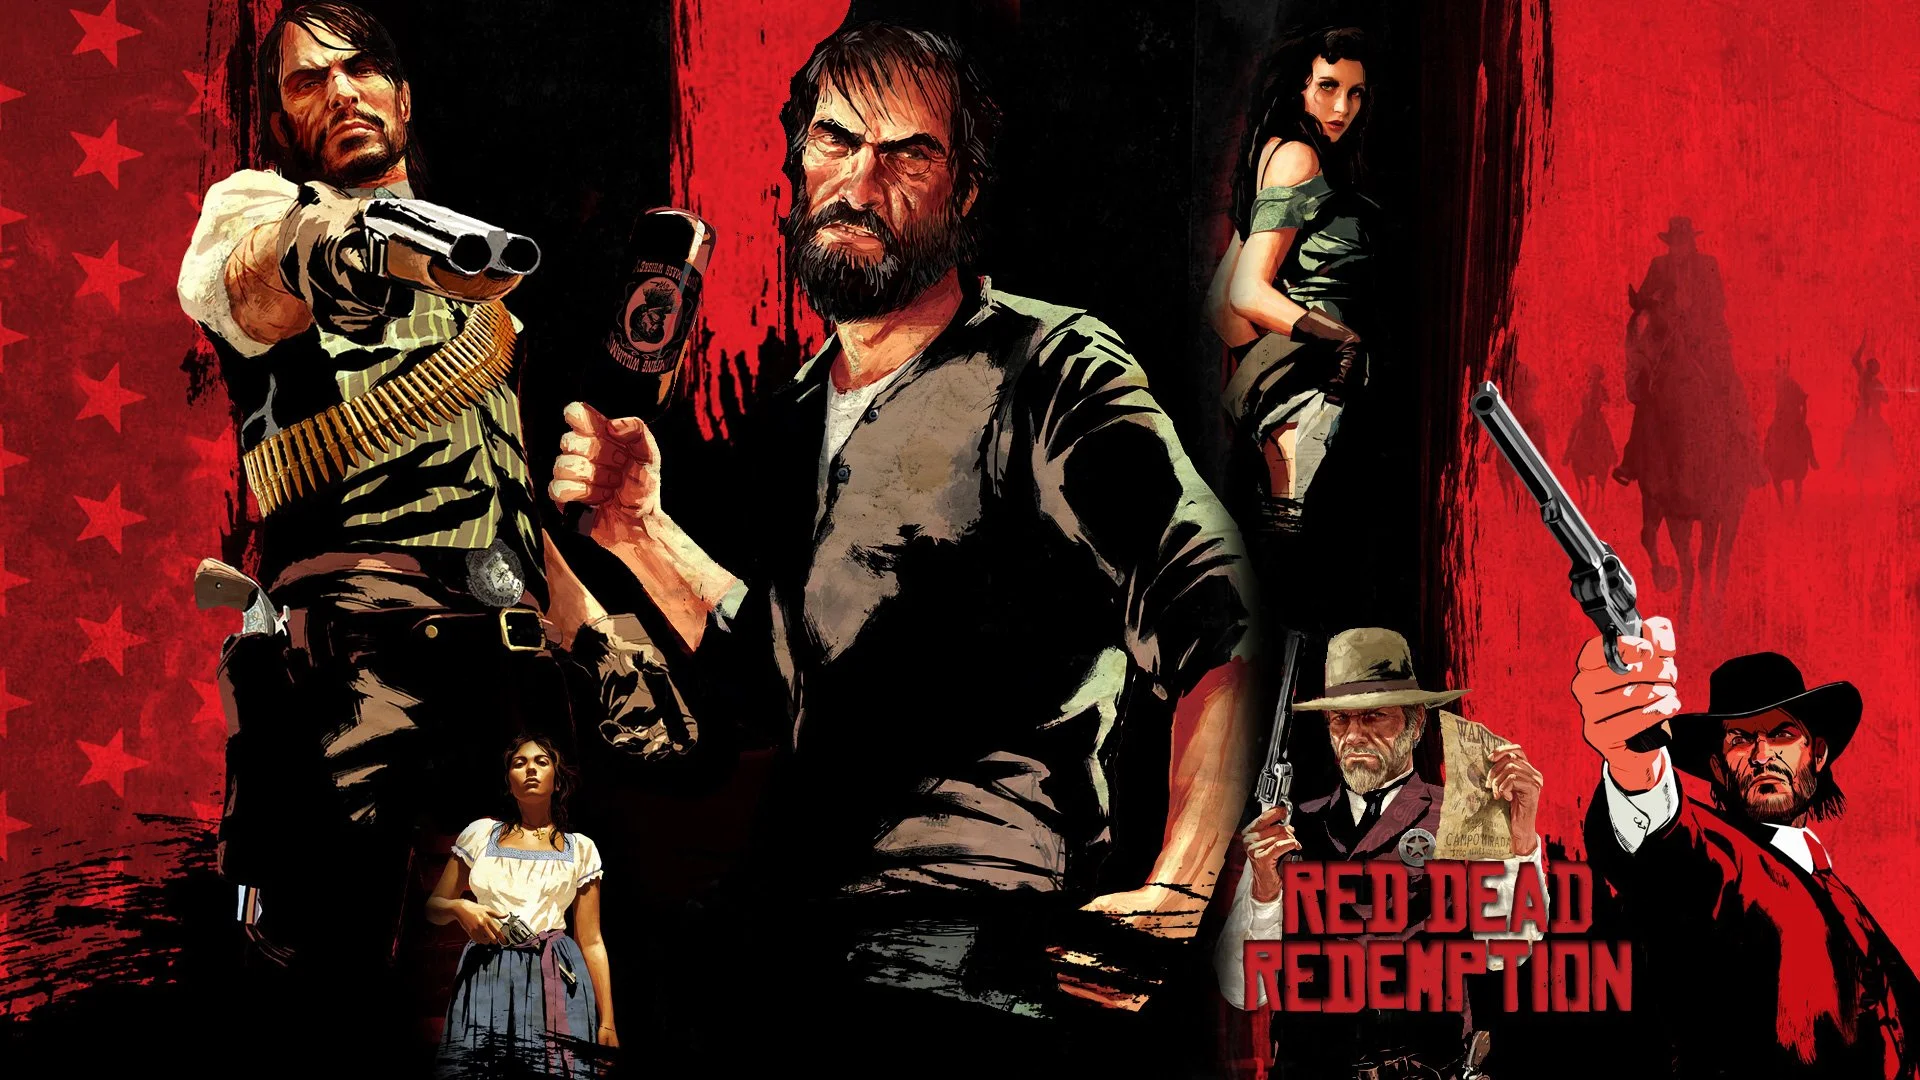 Rockstar никогда всерьез не думала о PC-версии Red Dead Redemption - фото 1